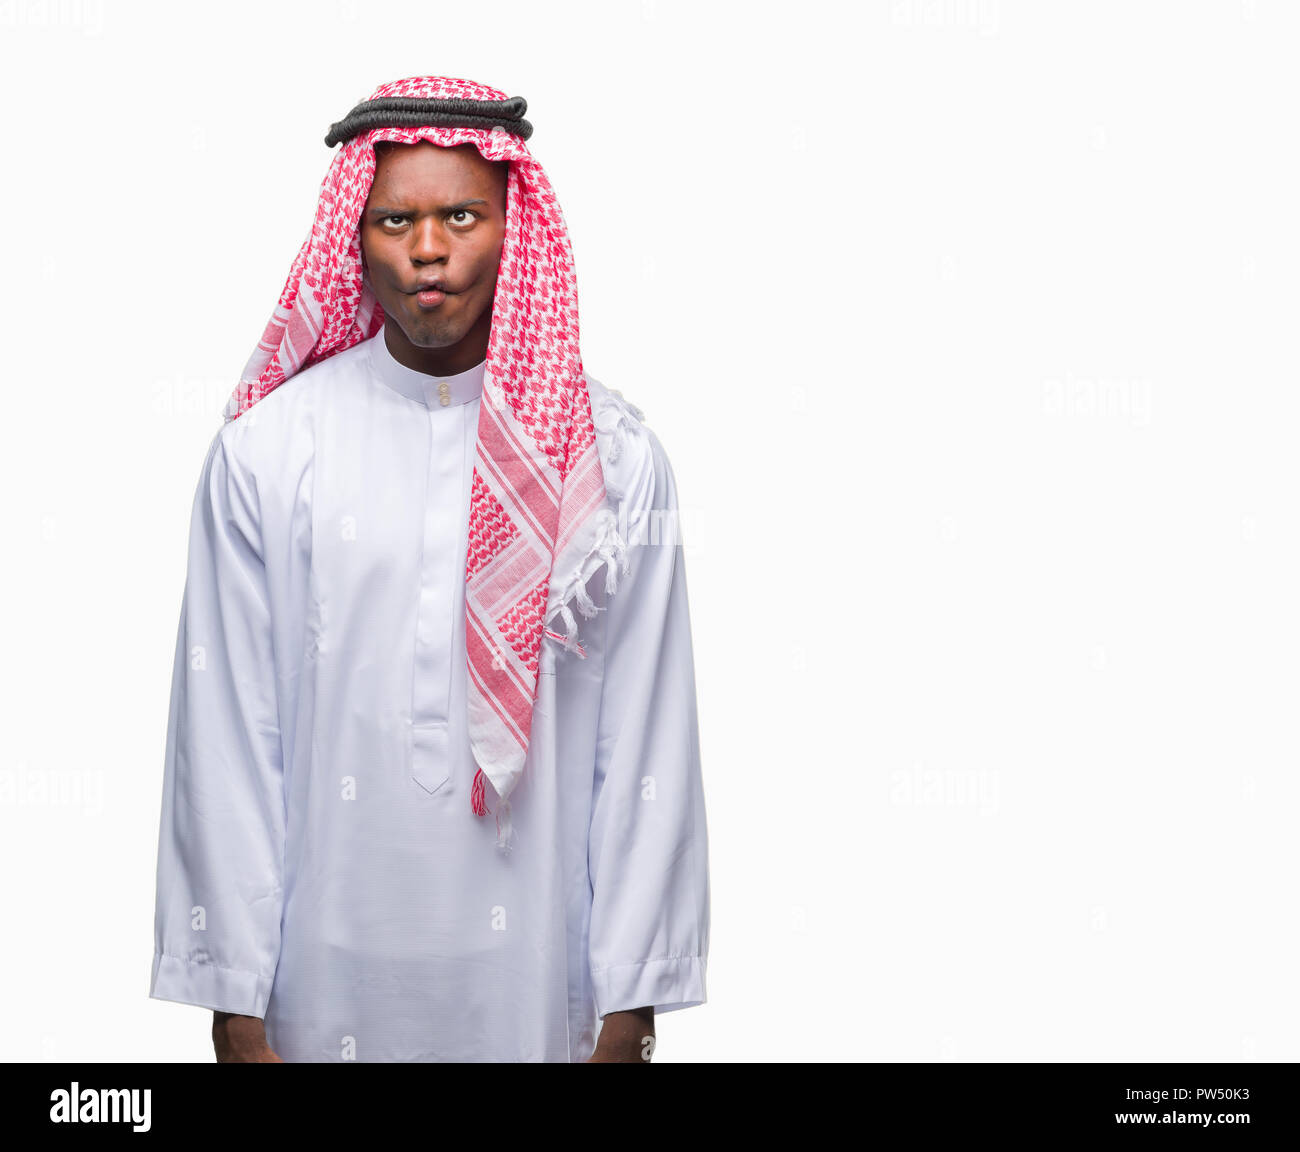 Junge arabische afrikanischen Mann mit traditionellen Kufiya über  isolierte, Fisch Gesicht mit Lippen, verrückt und komische Geste. Lustige  Ausdruck Stockfotografie - Alamy